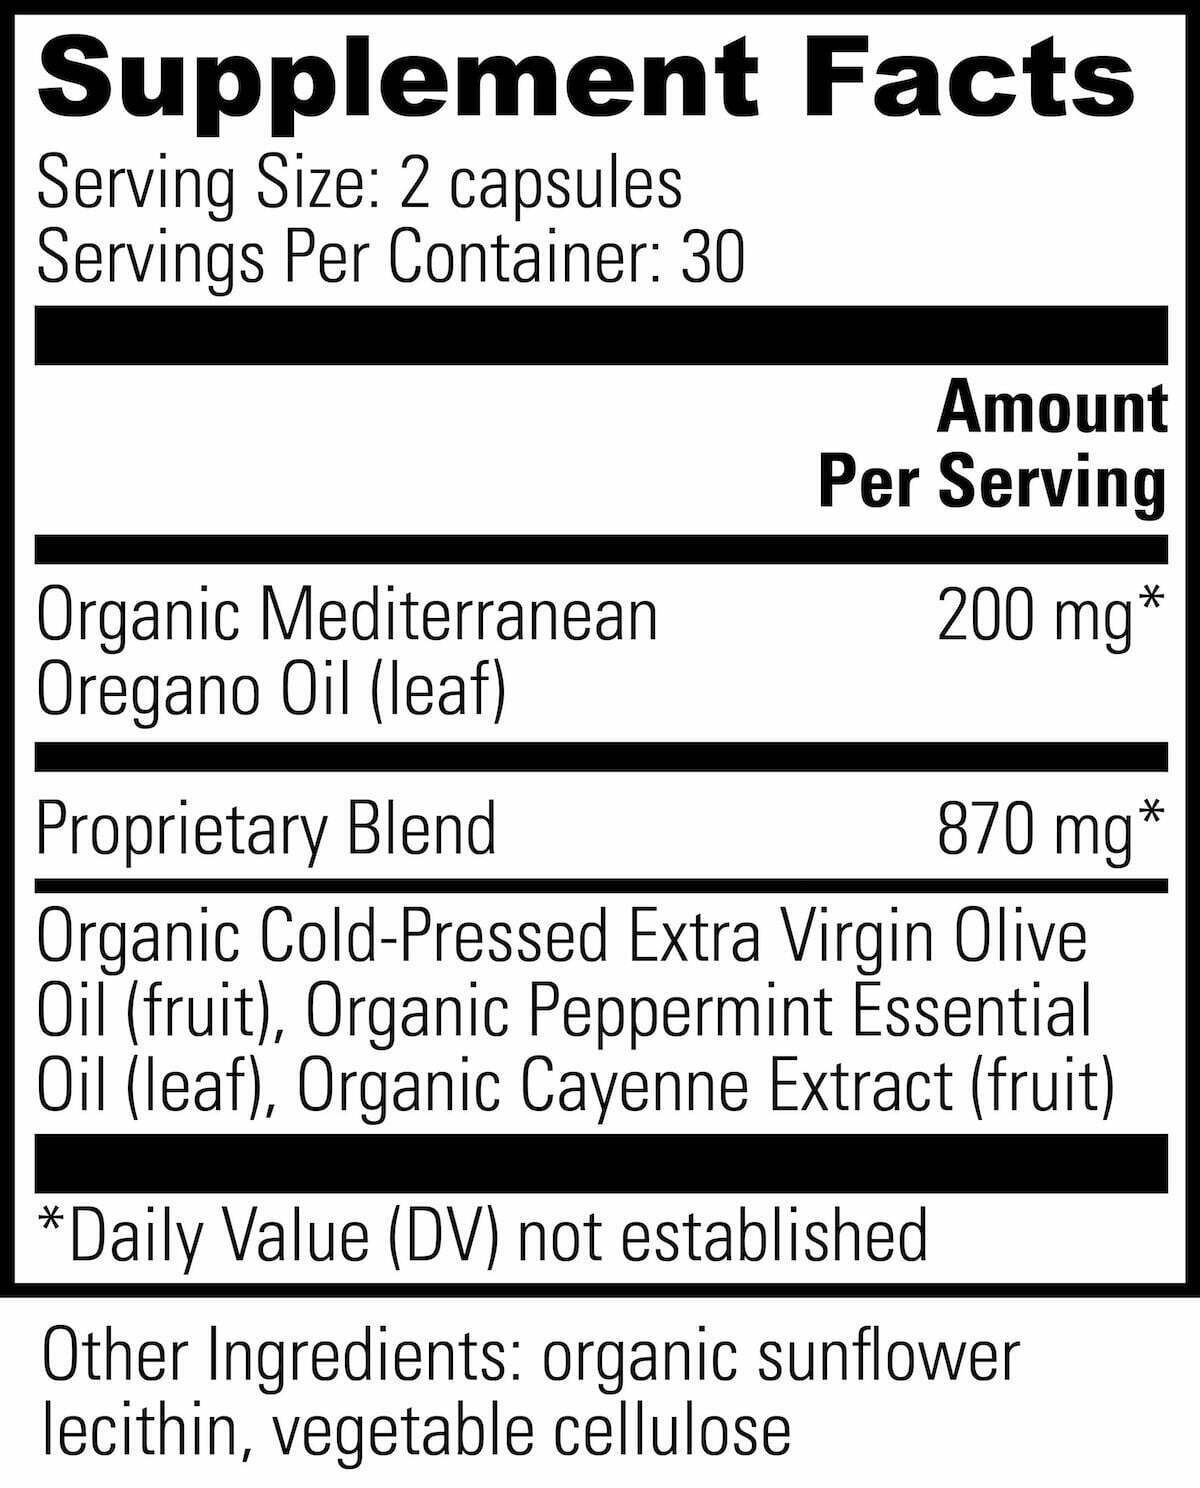 Global Healing oregano oil capsules